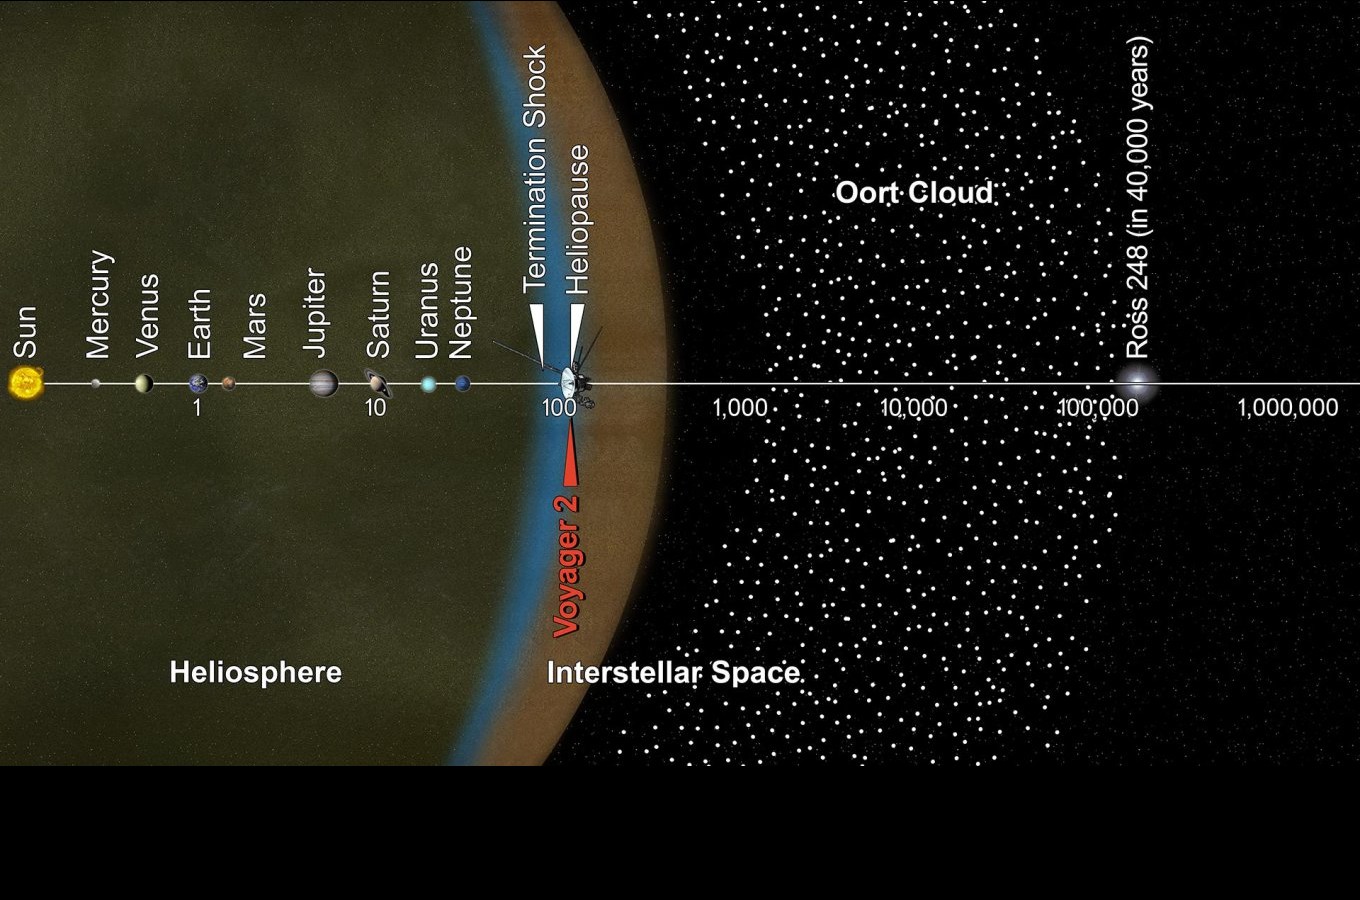 Положение Вояджера 2 в Солнечной системе. Расстояния от Солнца даны в логарифмической шкале